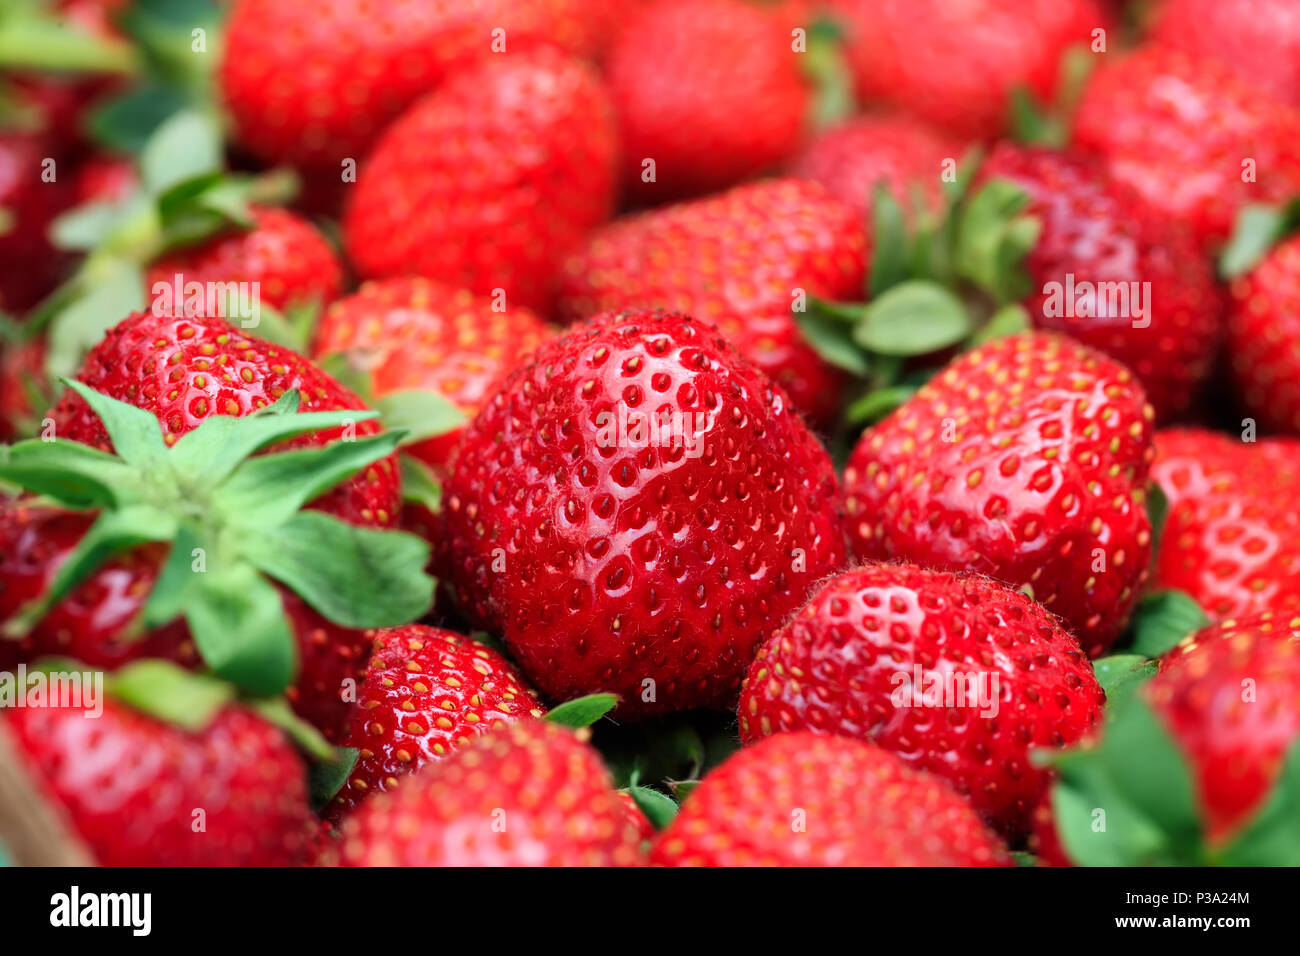 Beste Hintergrund mit frisch geernteten Erdbeeren im grossen Rahmen Bild. Frische organische und reife rote Erdbeere im Makro Bild. Konzeptionelle Bild. Stockfoto